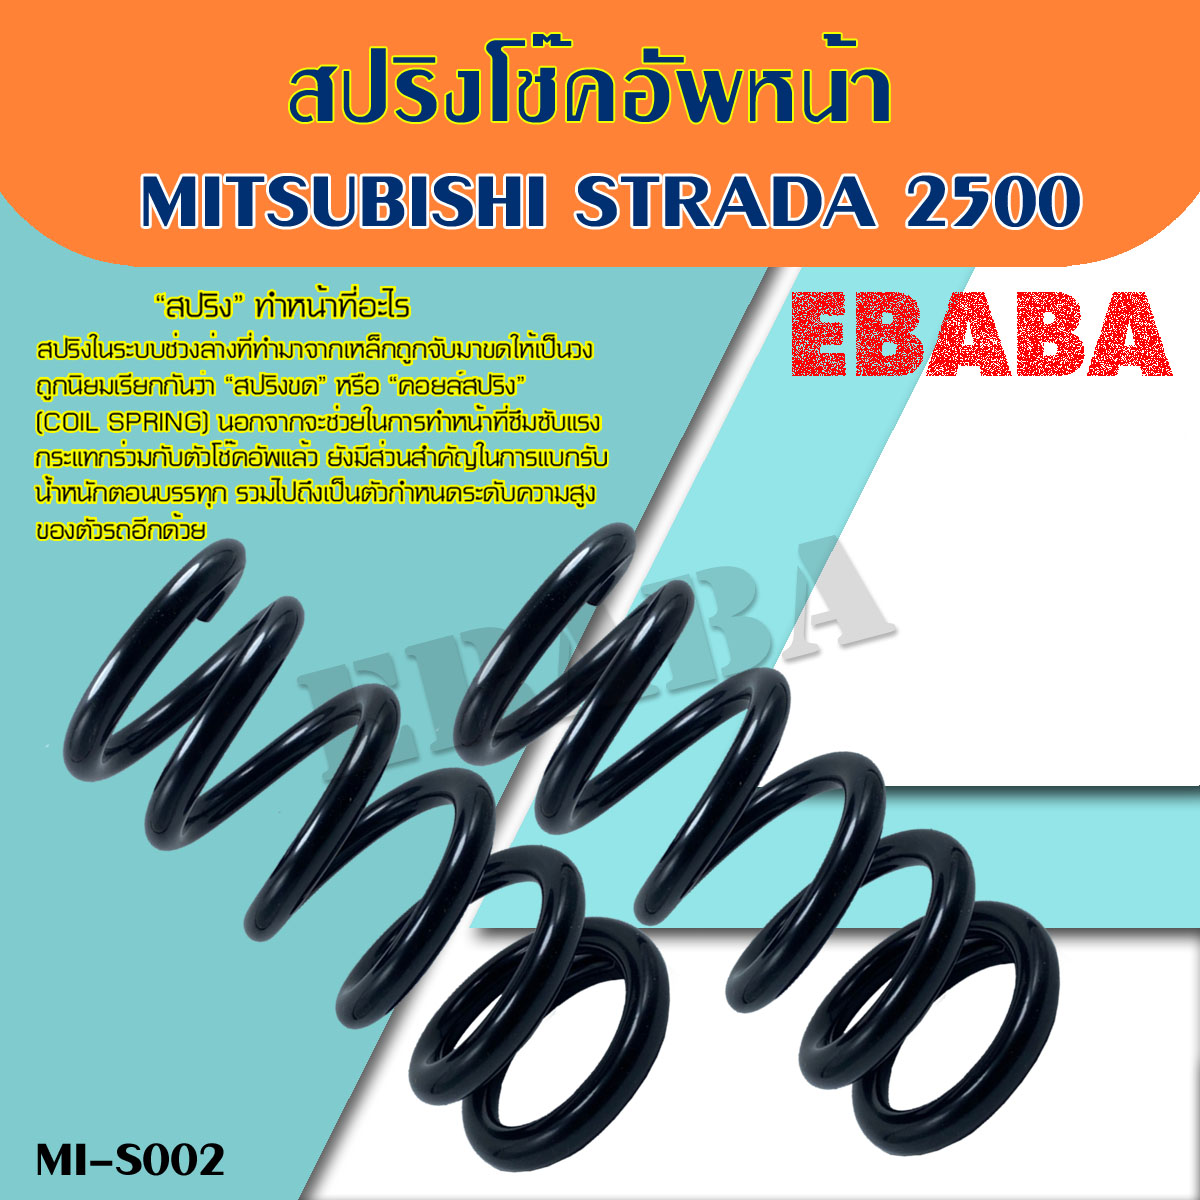 สปริง สปริงโช้คอัพ หน้า MITSUBISHI STRADA 2500 (มิตซูบิชิ สตราด้า 2500) ( รหัสสินค้า MI-S002 ) ( 1คู่ ) ยี่ห้อ NDK